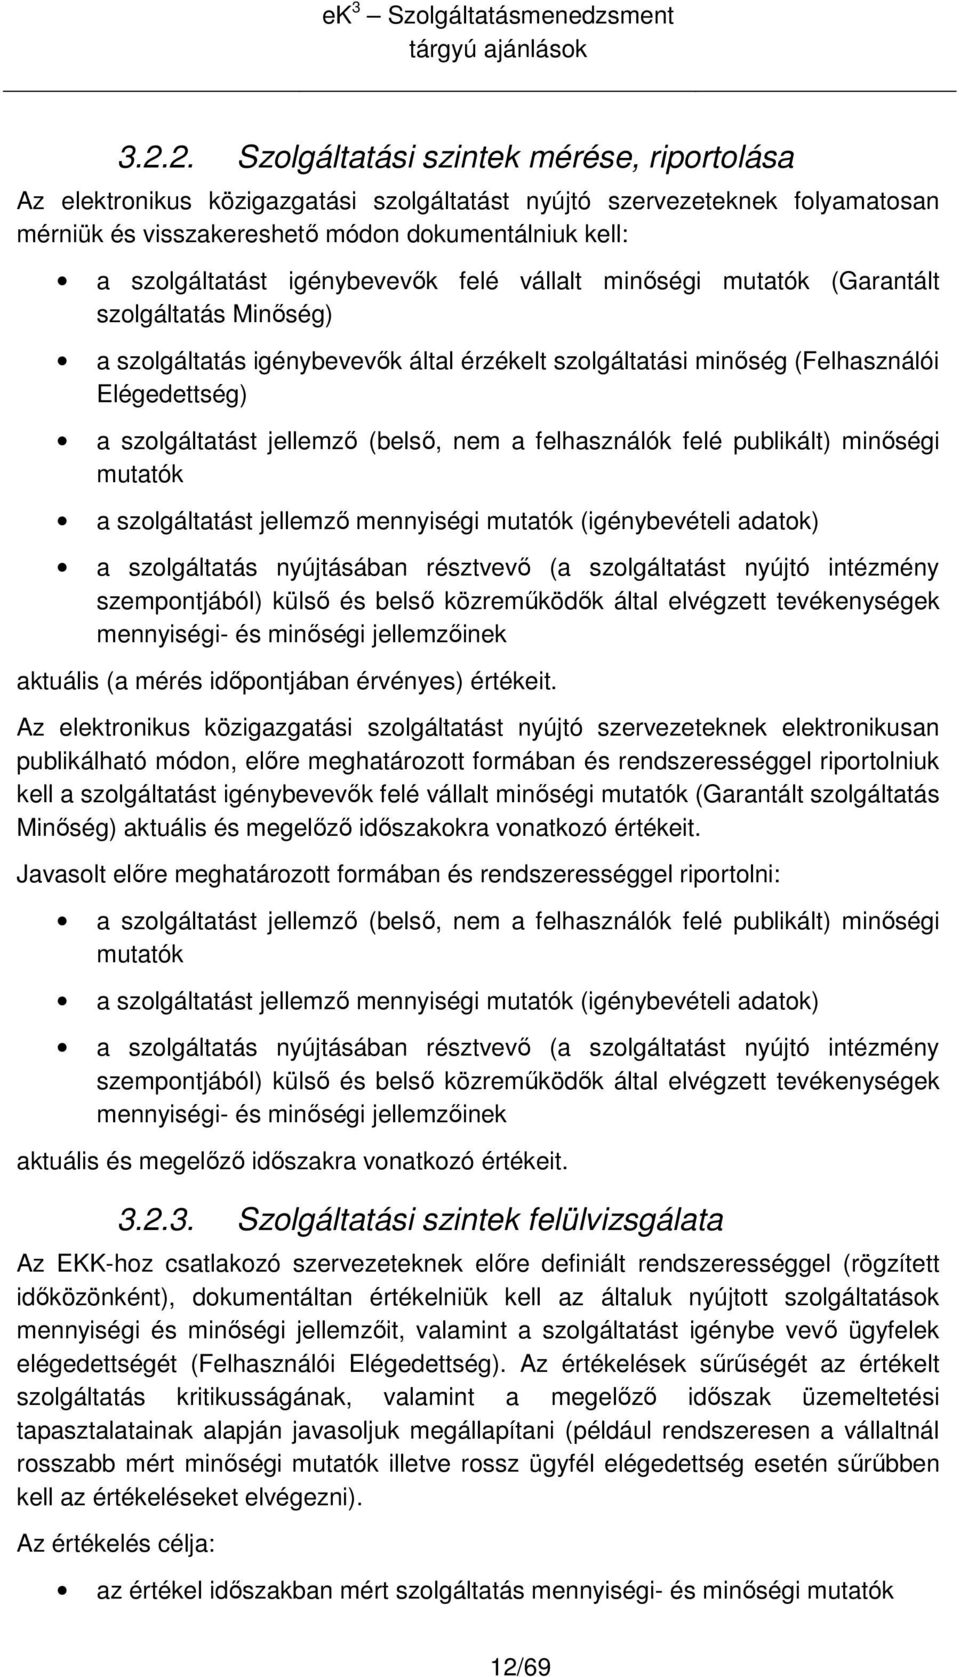 nem a felhasználók felé publikált) minıségi mutatók a szlgáltatást jellemzı mennyiségi mutatók (igénybevételi adatk) a szlgáltatás nyújtásában résztvevı (a szlgáltatást nyújtó intézmény szempntjából)